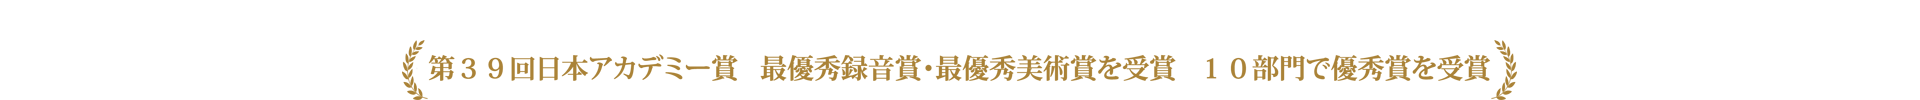 映画「海難1890」第39回日本アカデミー賞